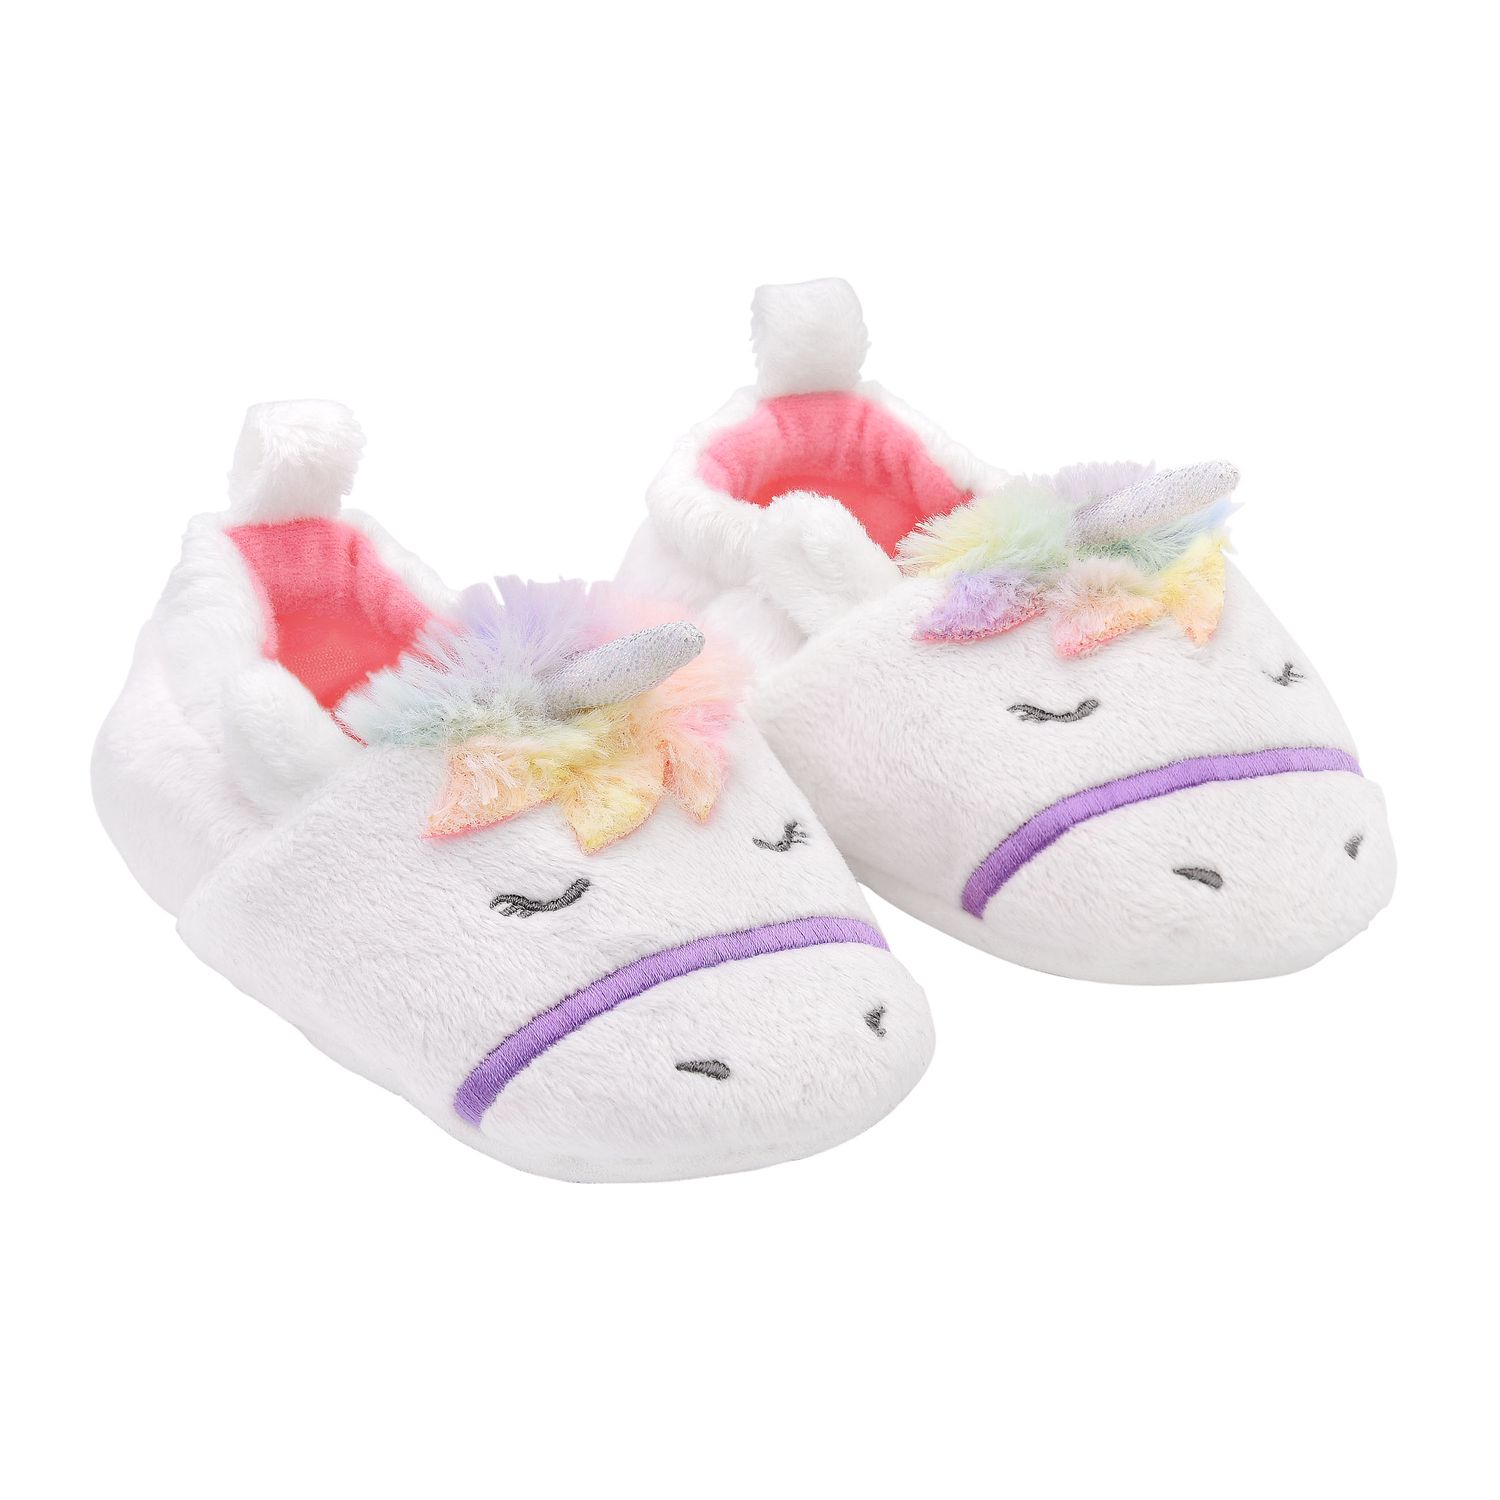 kohls unicorn slippers